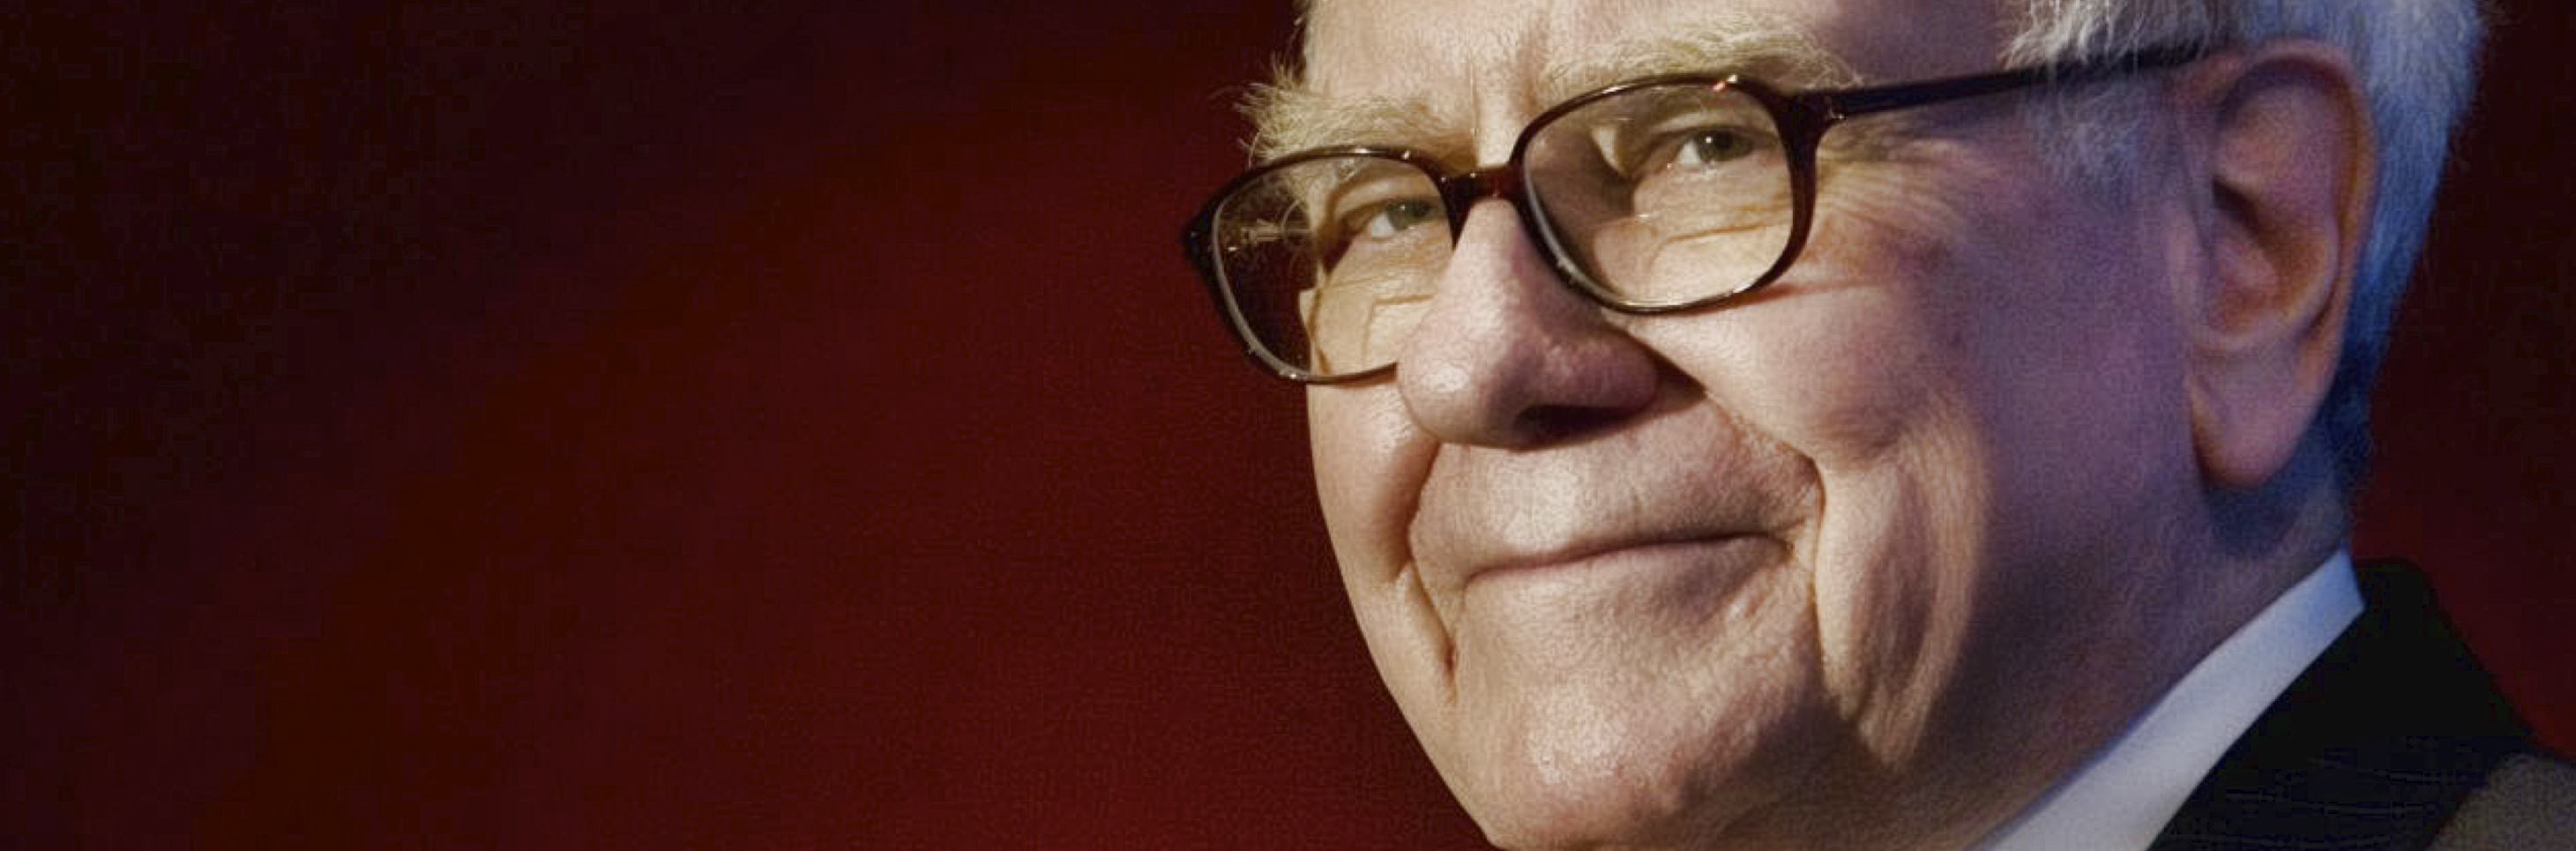 Warren Buffett an ‘Idiot’?